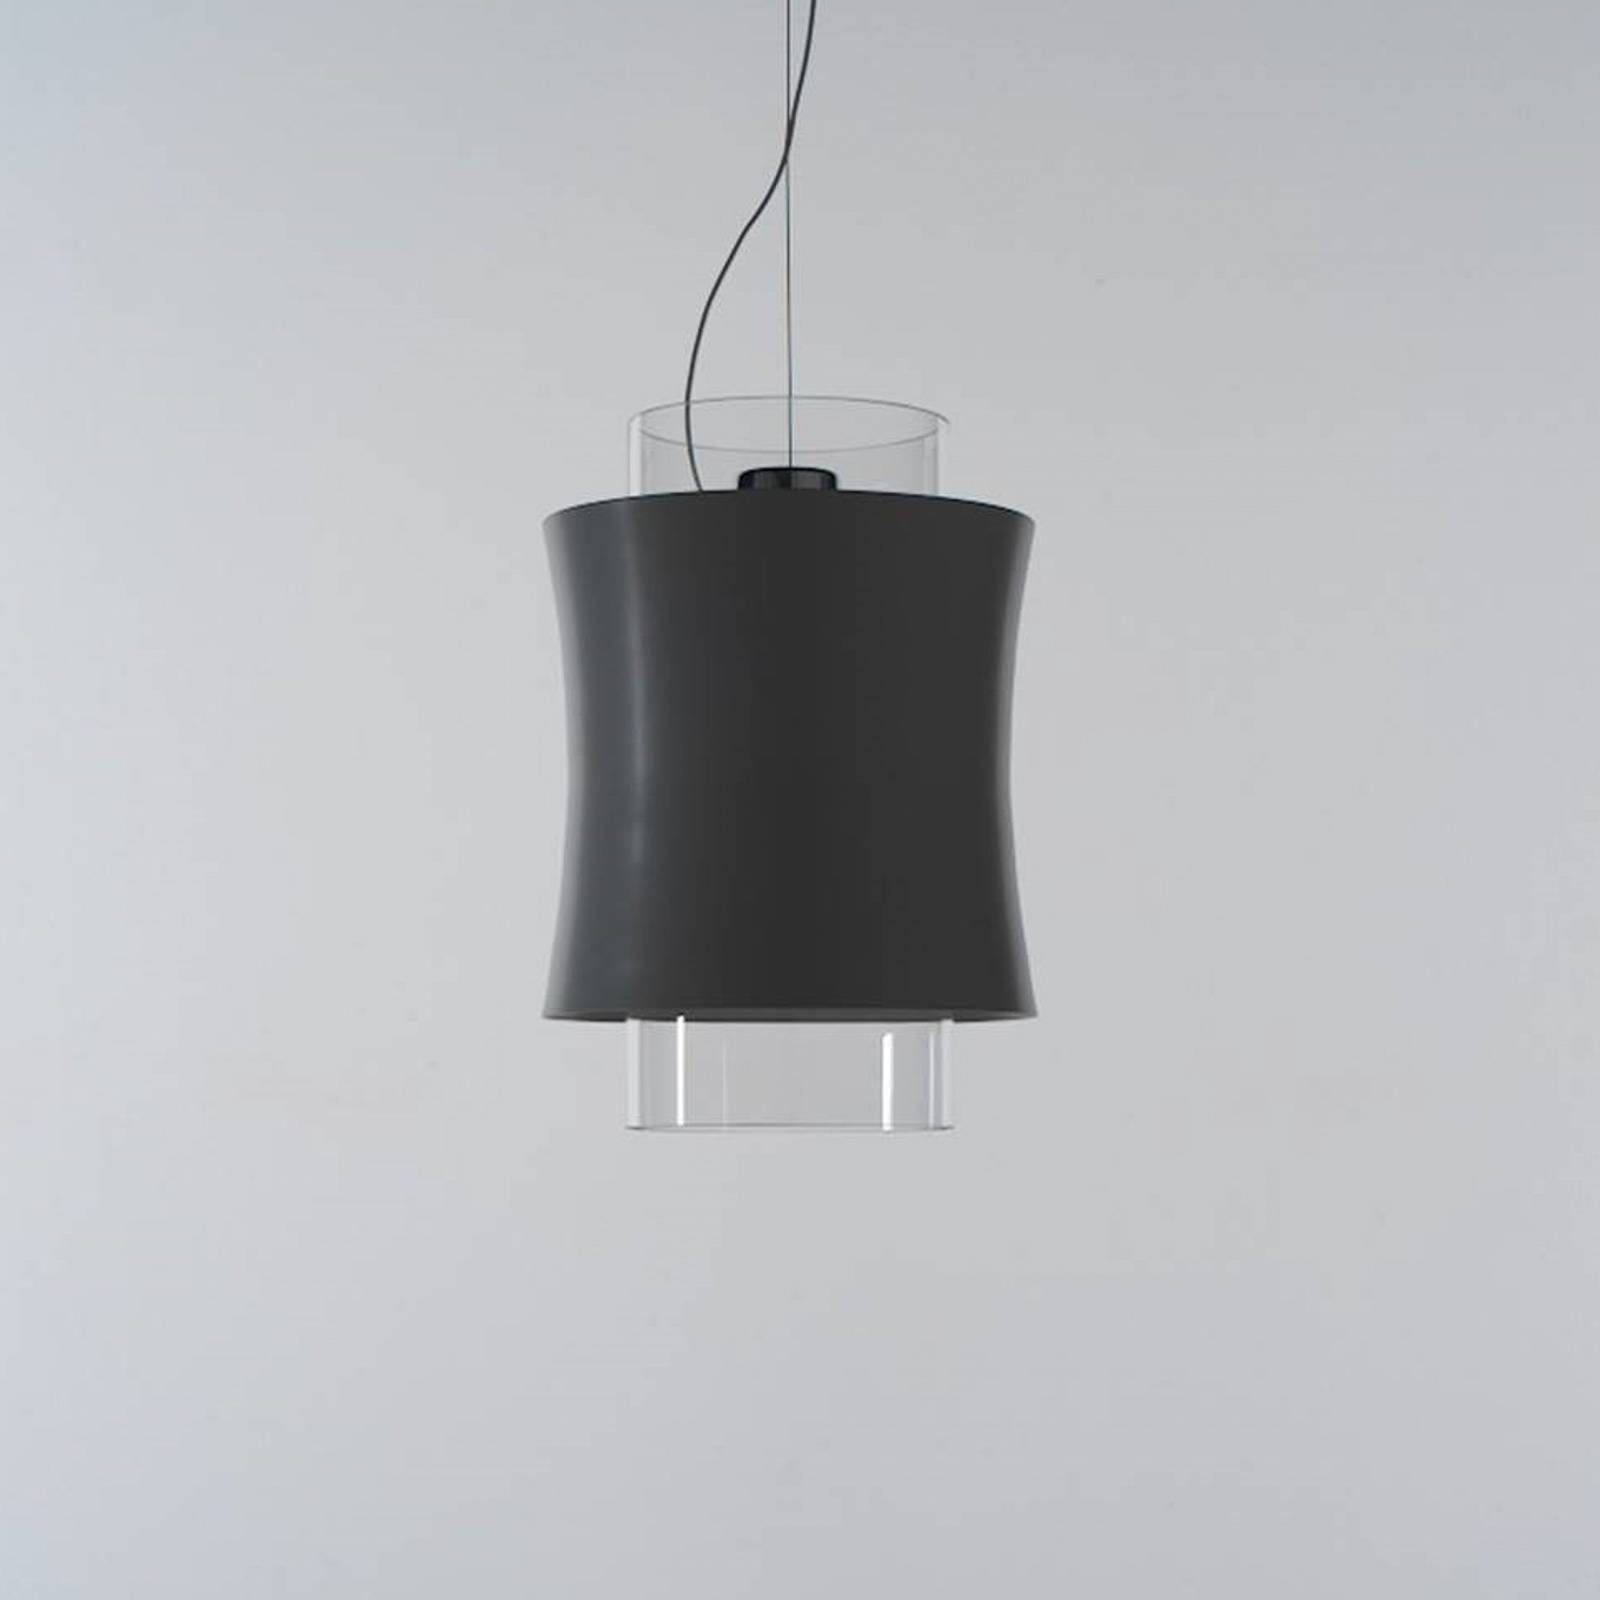 Prandina Fez S1 hængelampe, sort